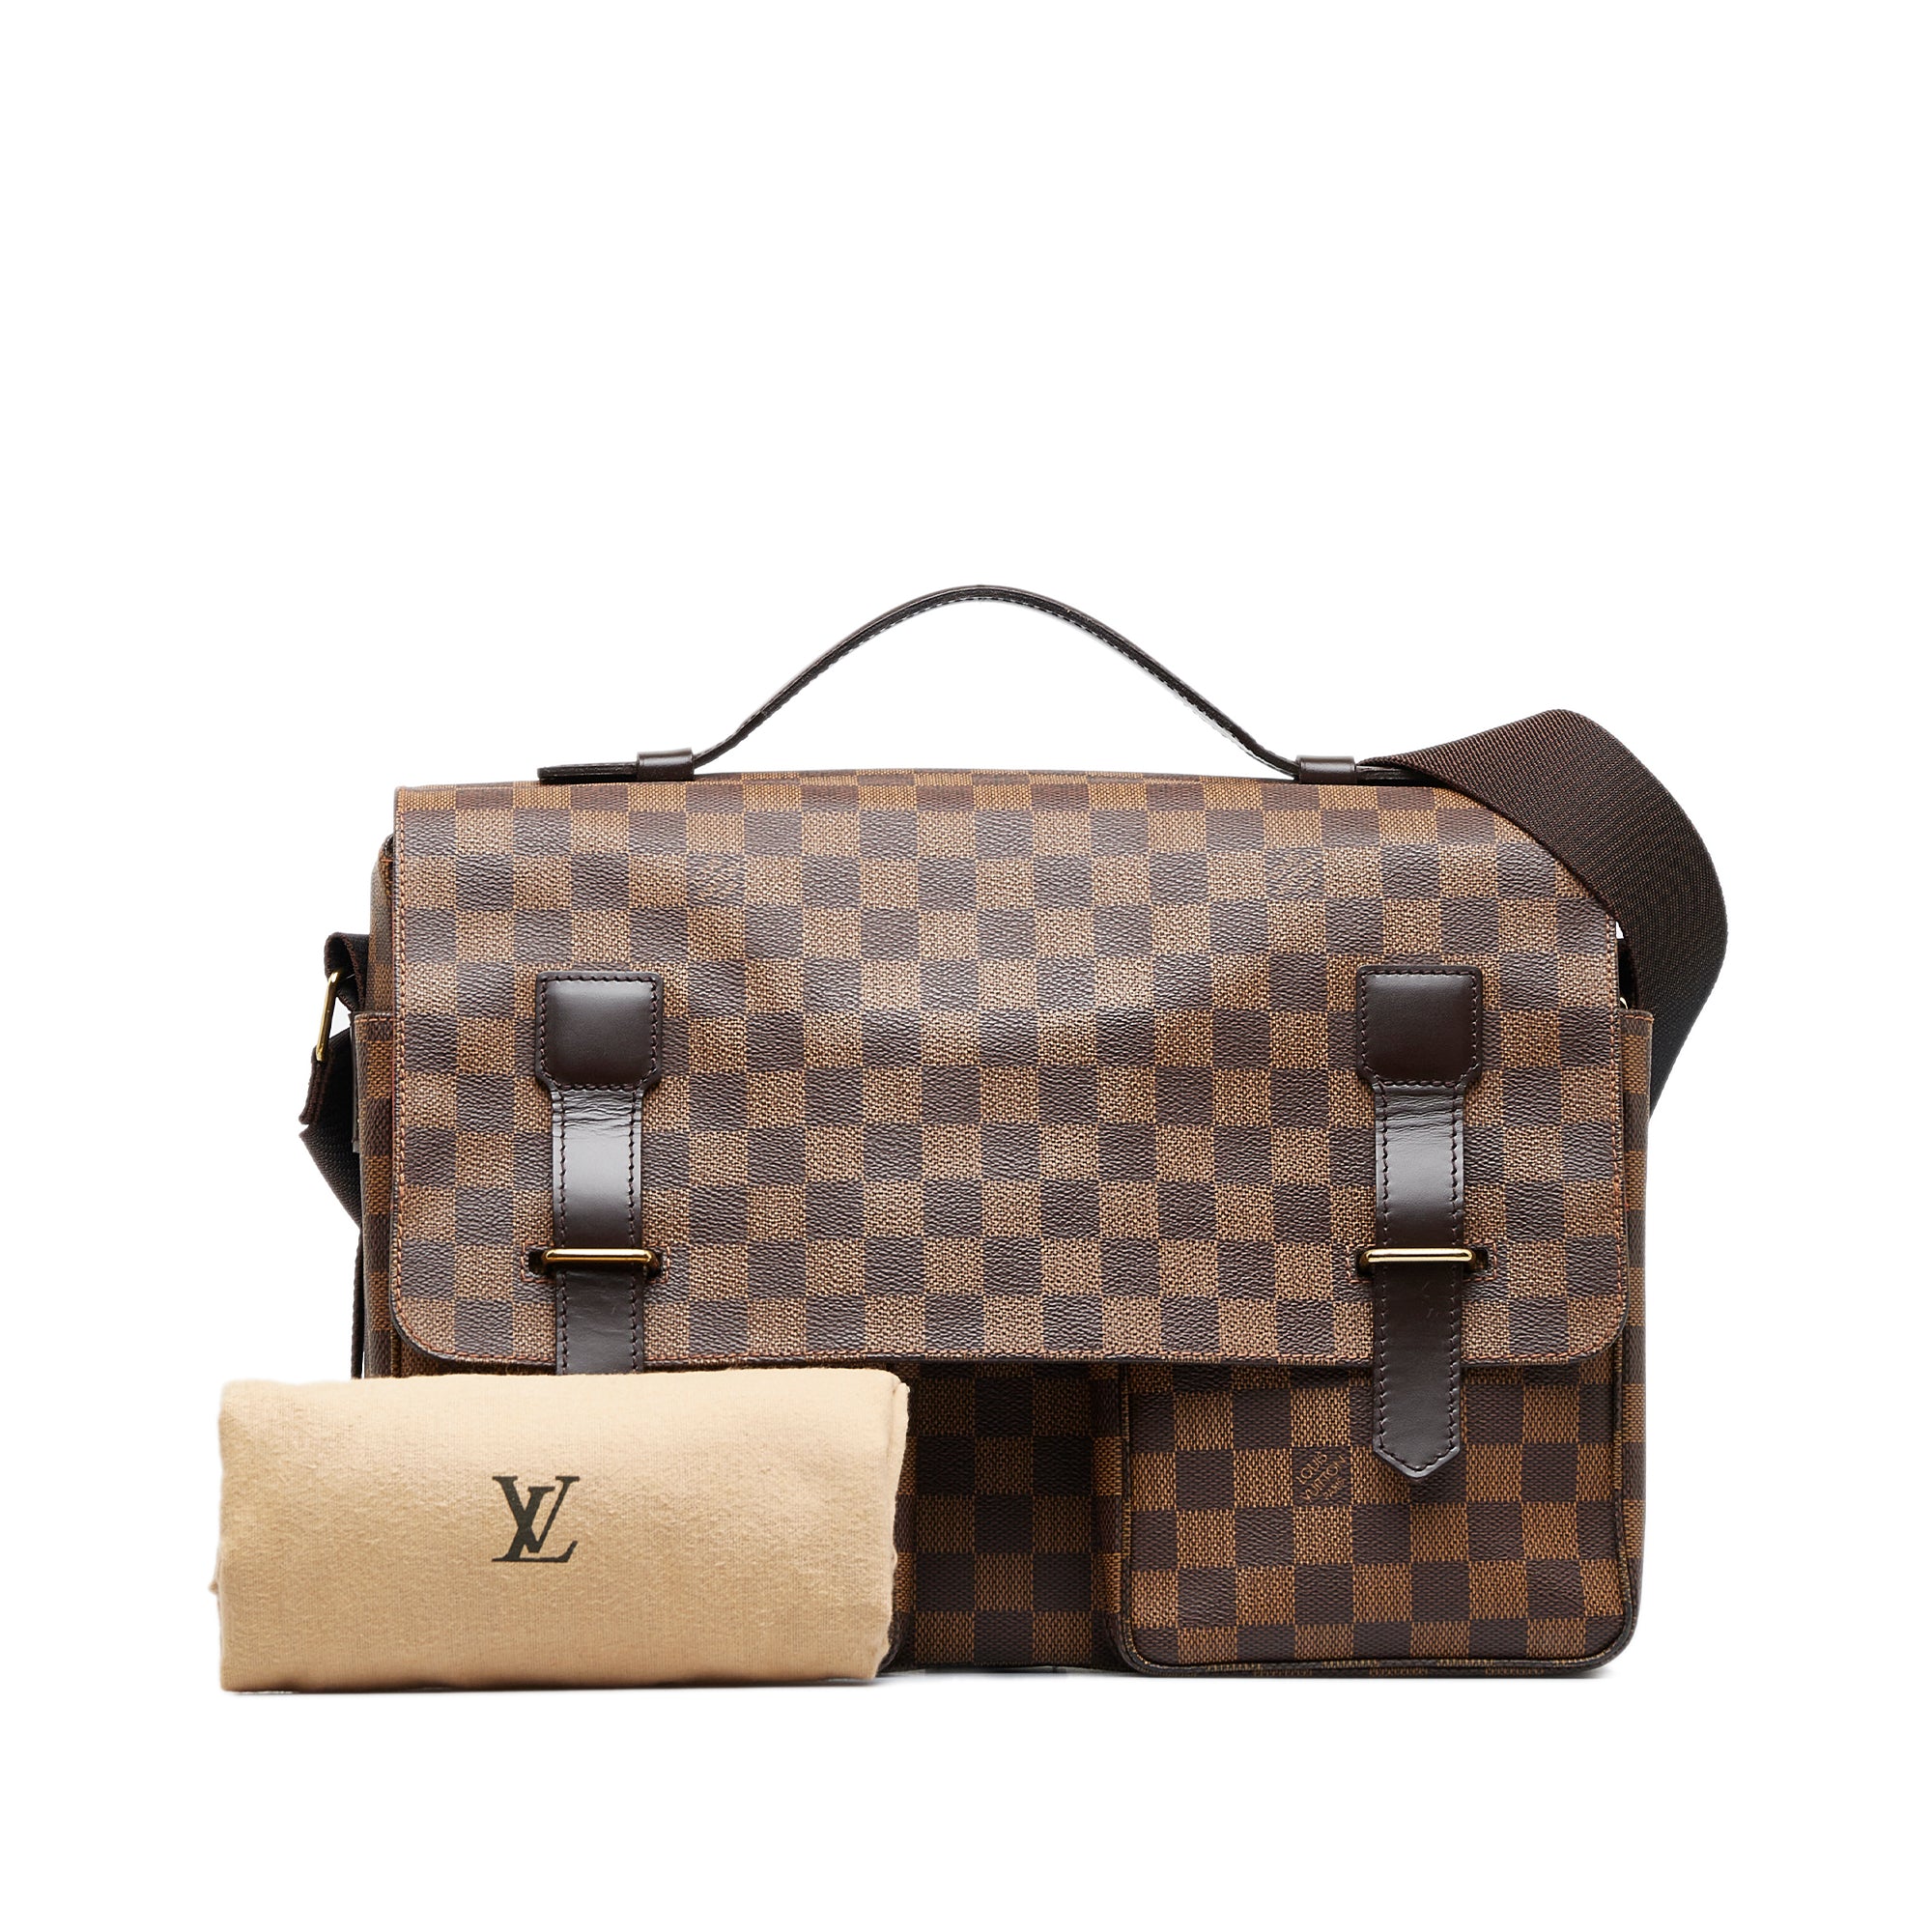 Buy Cheap Louis Vuitton Message bag for Men Original 1:1 Quality